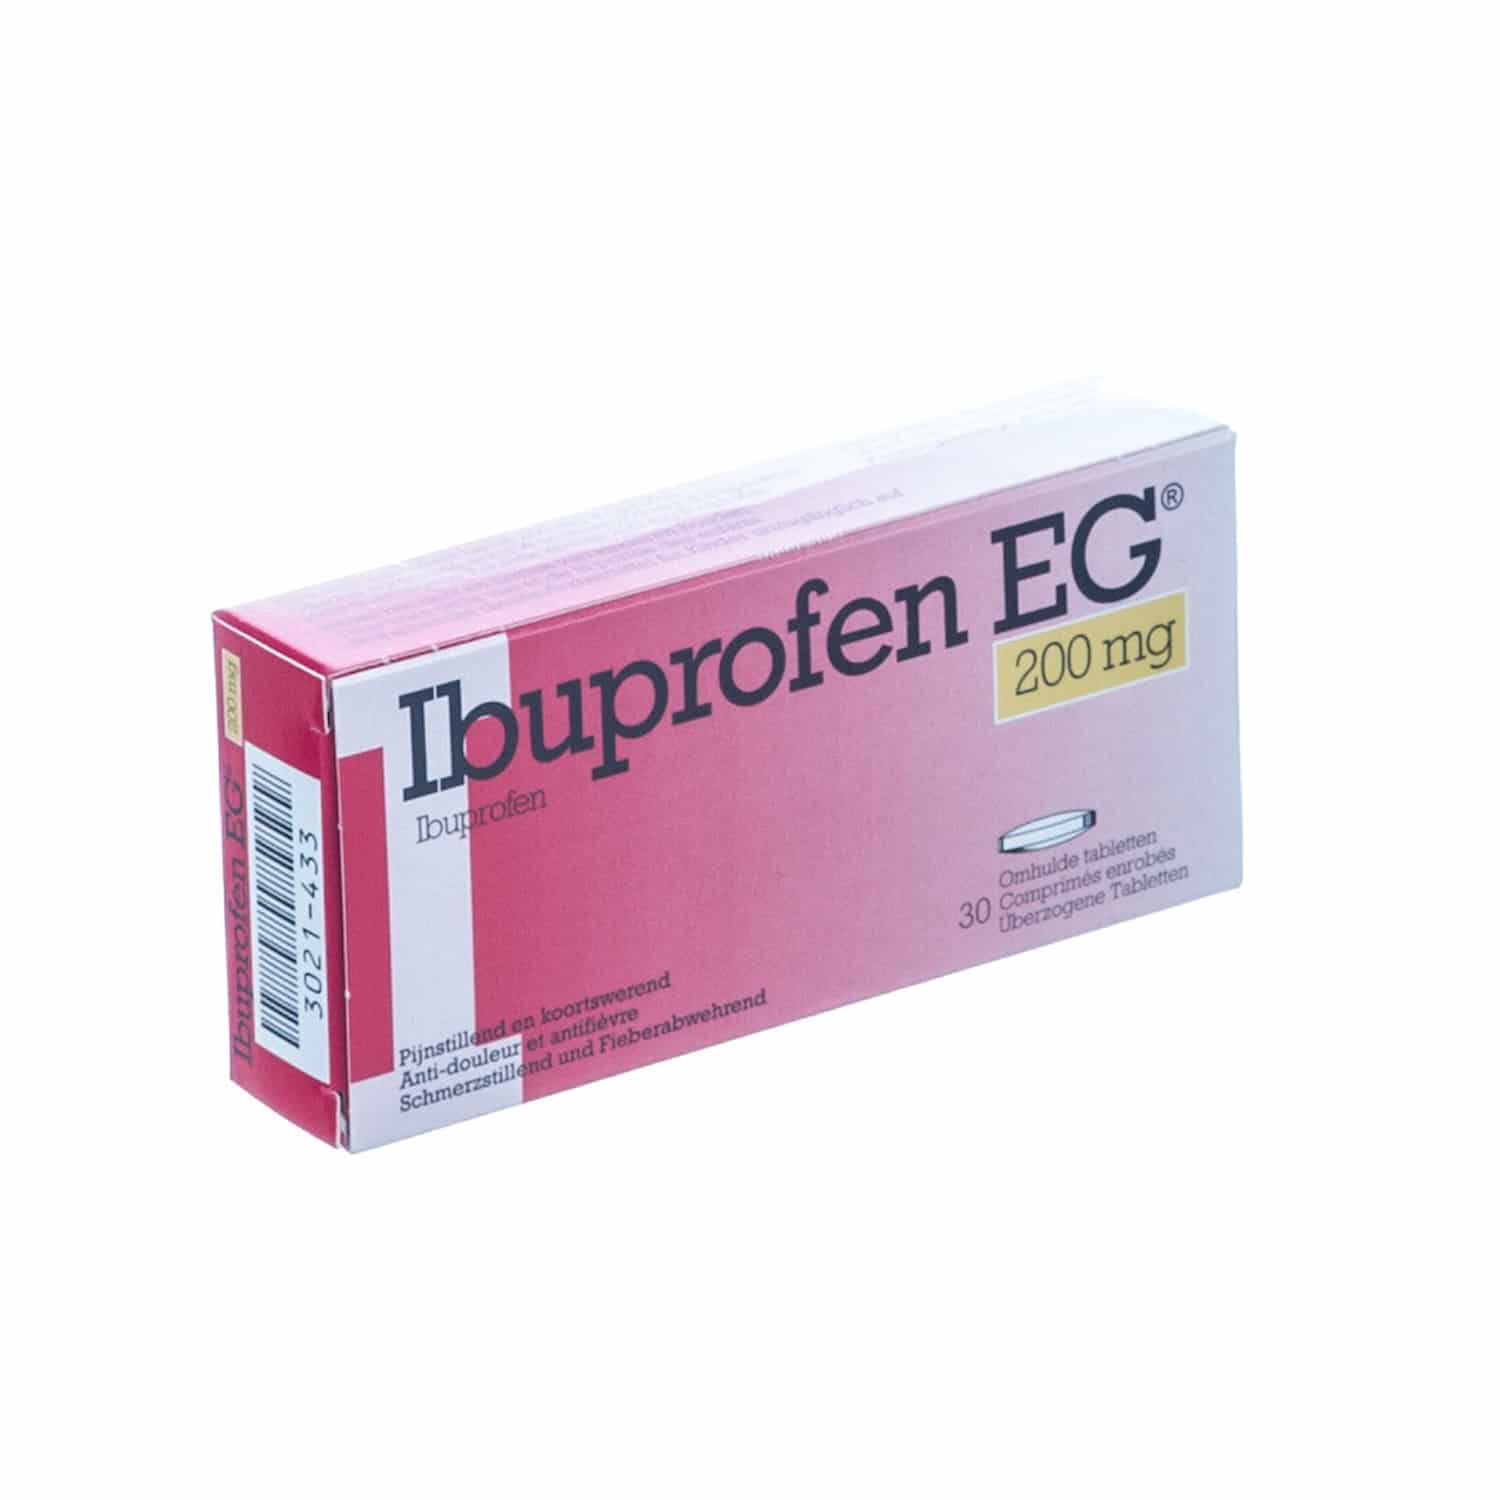 Ibuprofen EG 200 mg